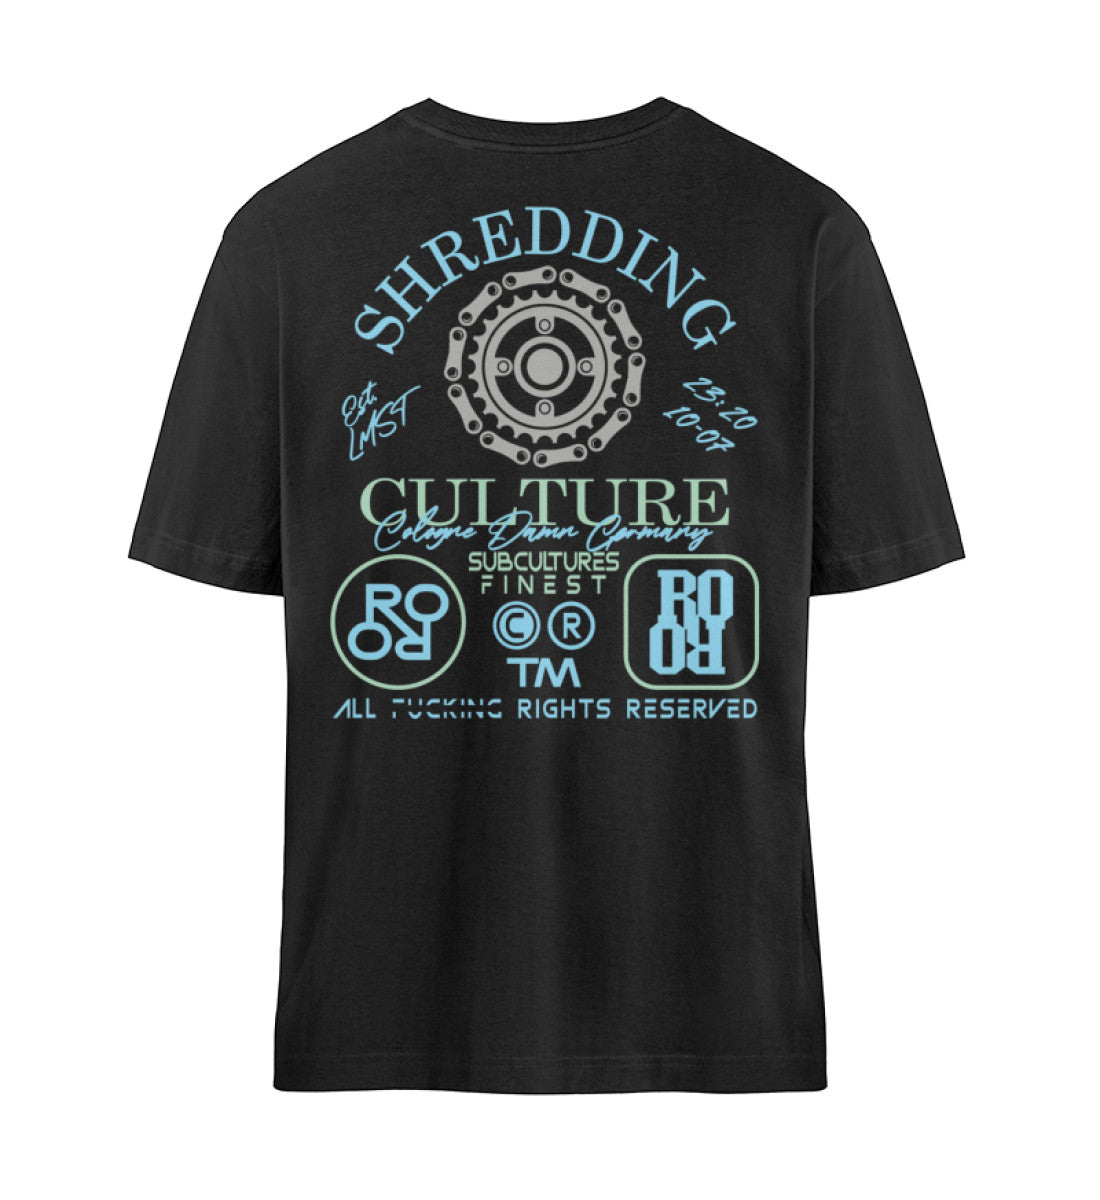 Schwarzes T-Shirt Unisex Relaxed Fit für Damen und Herren bedruckt mit dem Design der Roger Rockawoo Kollektion Mountainbike Shredding Culture Community